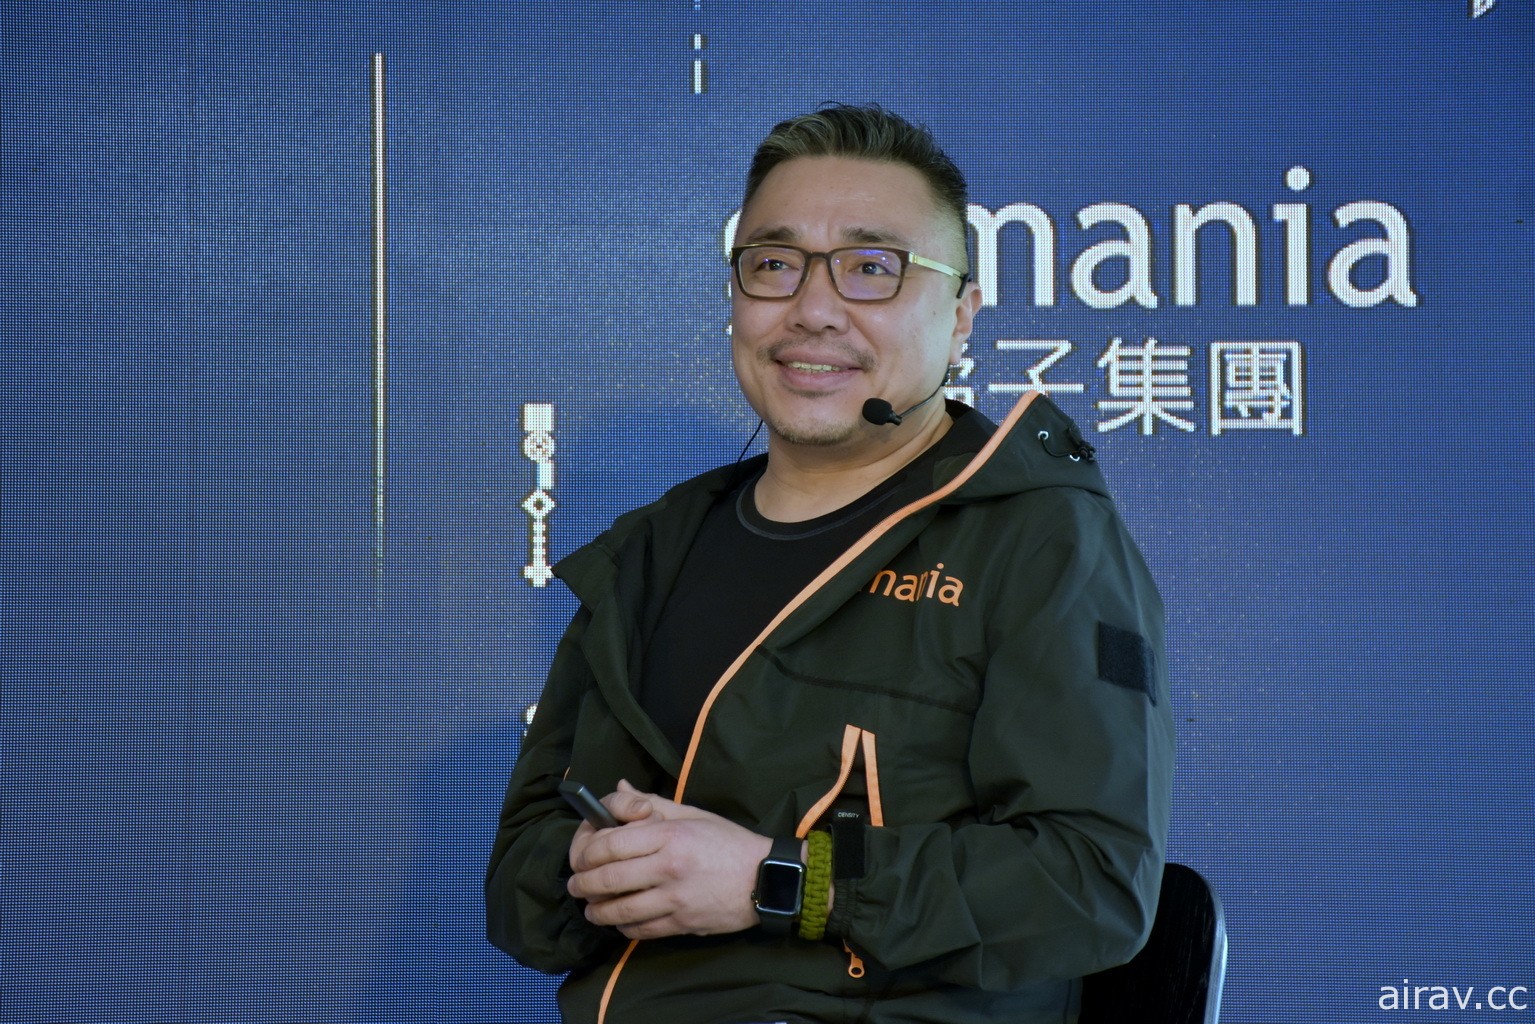 橘子集团庆祝 25 周年释出杨力州执导影片 刘柏园期许不要怕卡关、持续努力有机会破关